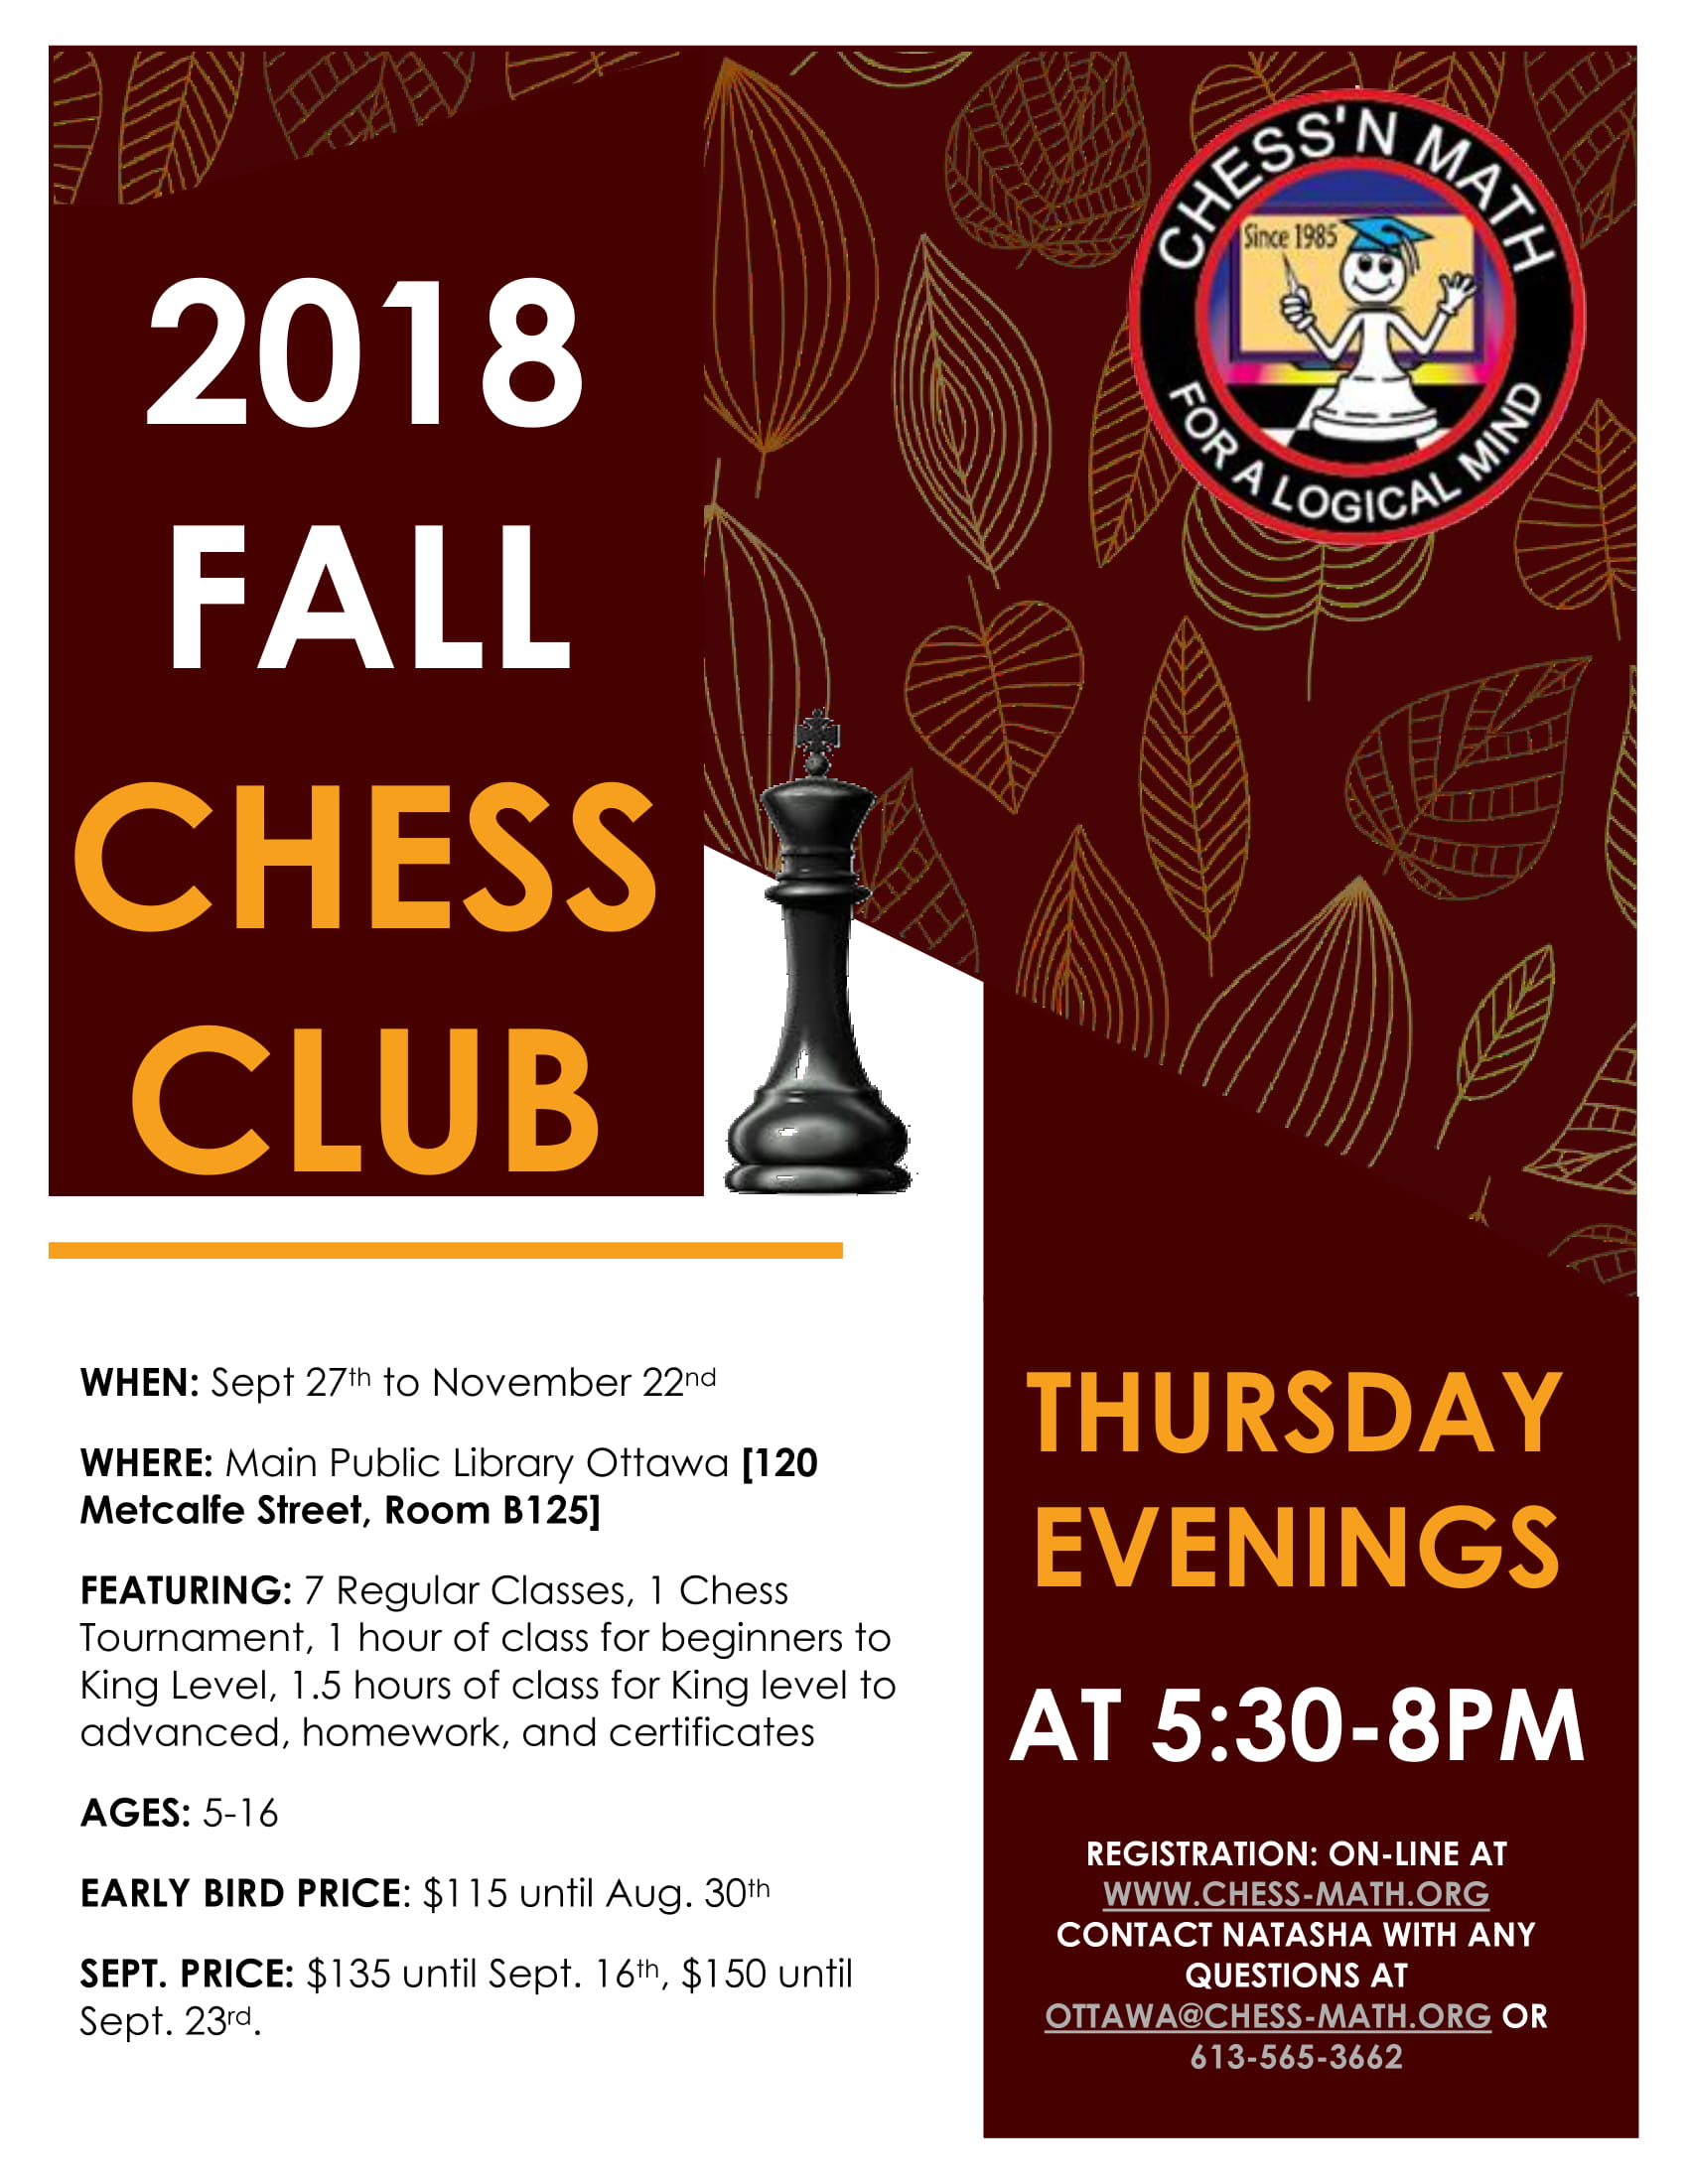 Thursday Evening Chess Club Fall 2018